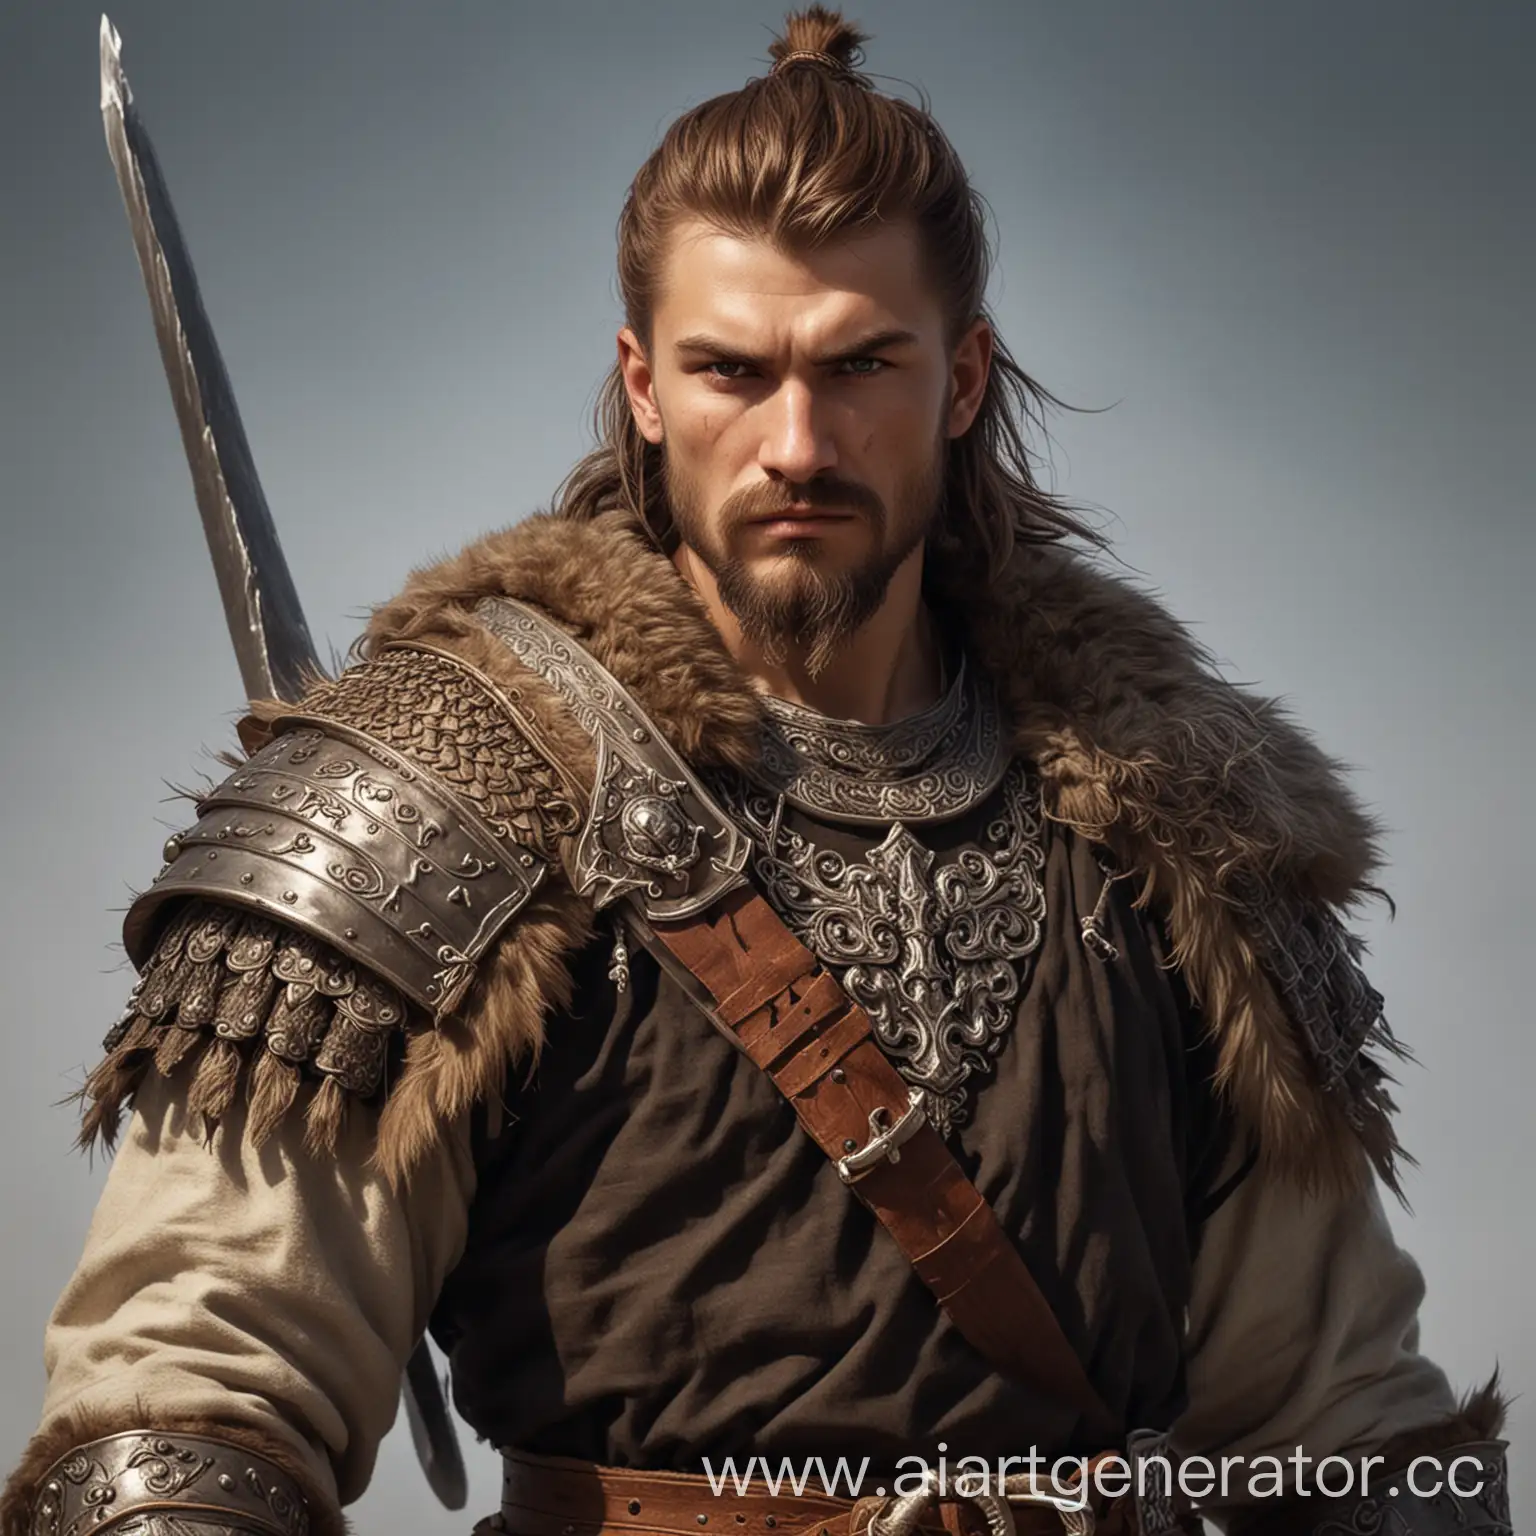 Персонаж для игры в ДНД - Мужчина, человек, воин, Богатырской внешности, славянин, Крупного телосложения, с коричневыми короткими волосами, с мечом